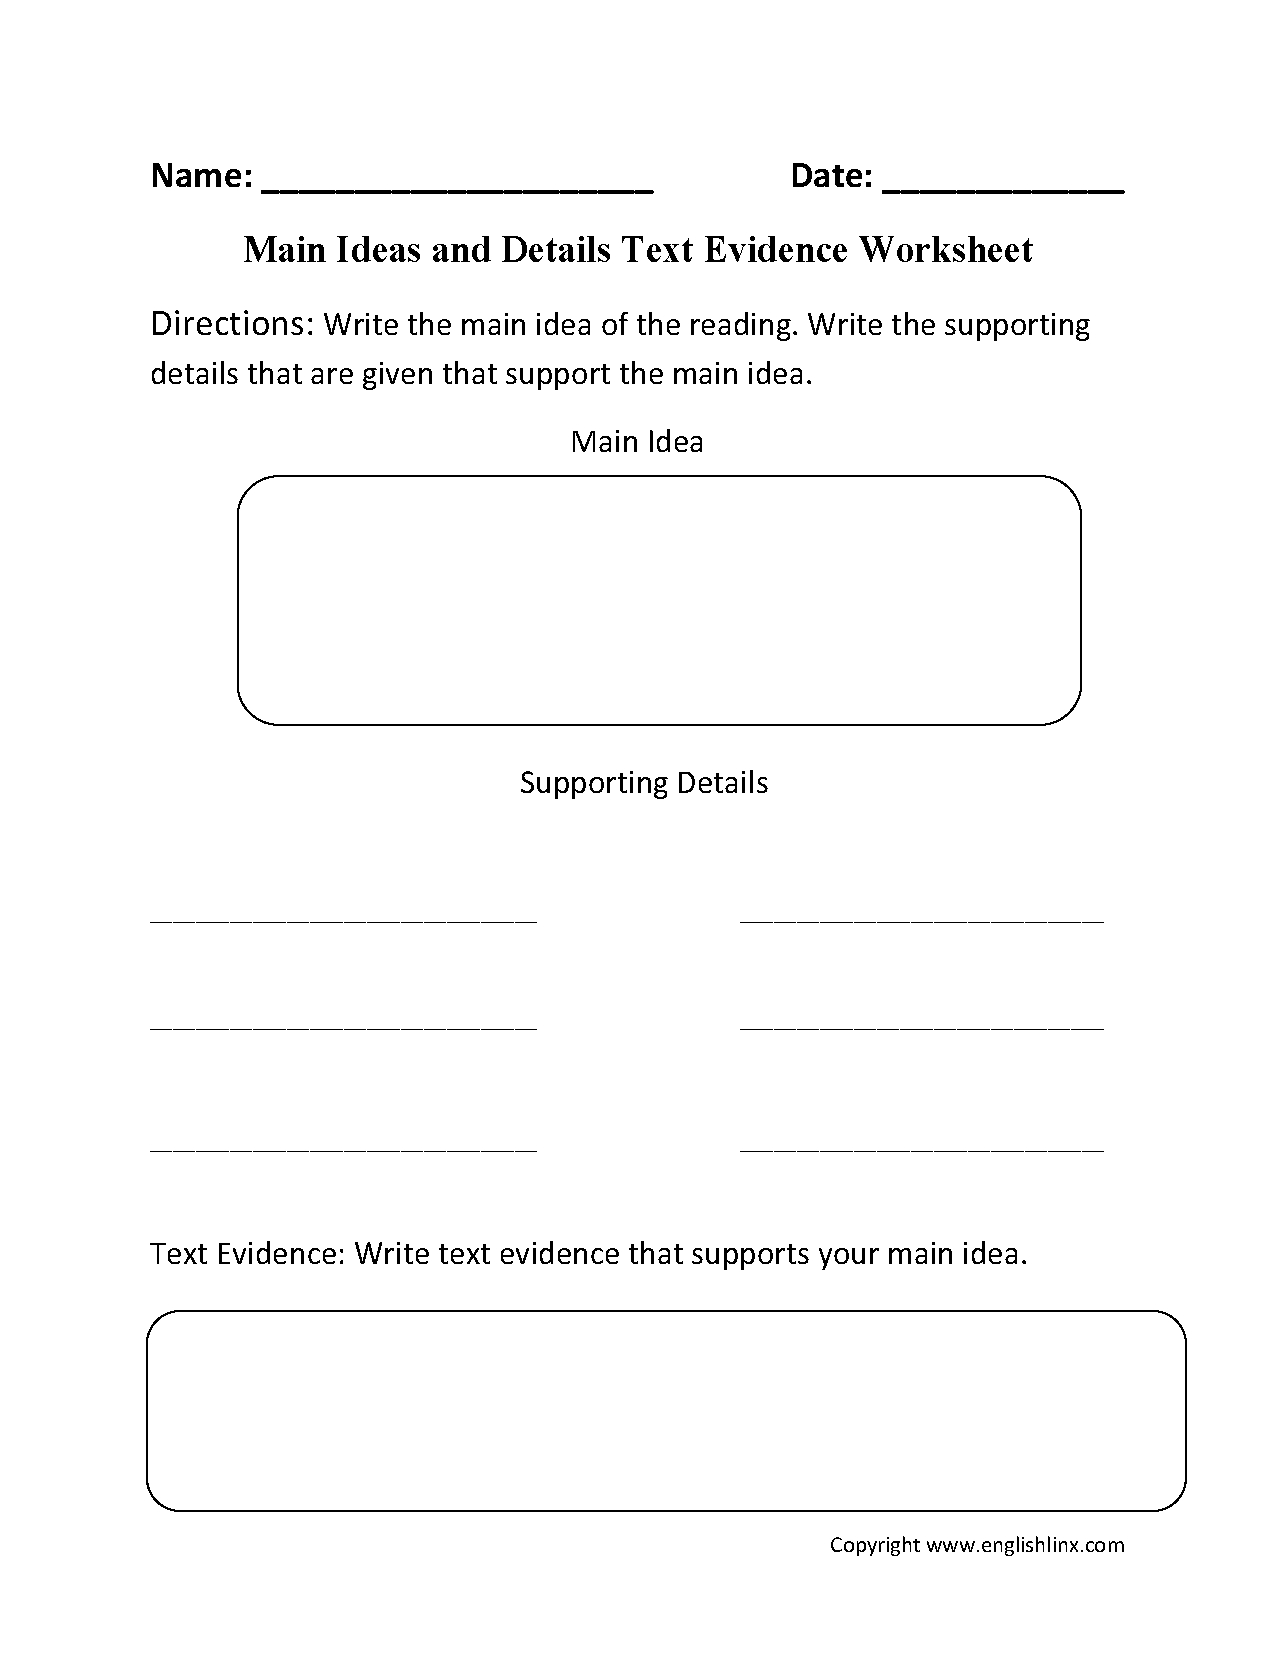 Main Idea Worksheets  Main Idea Text Evidence Worksheet Within Textual Evidence Worksheet